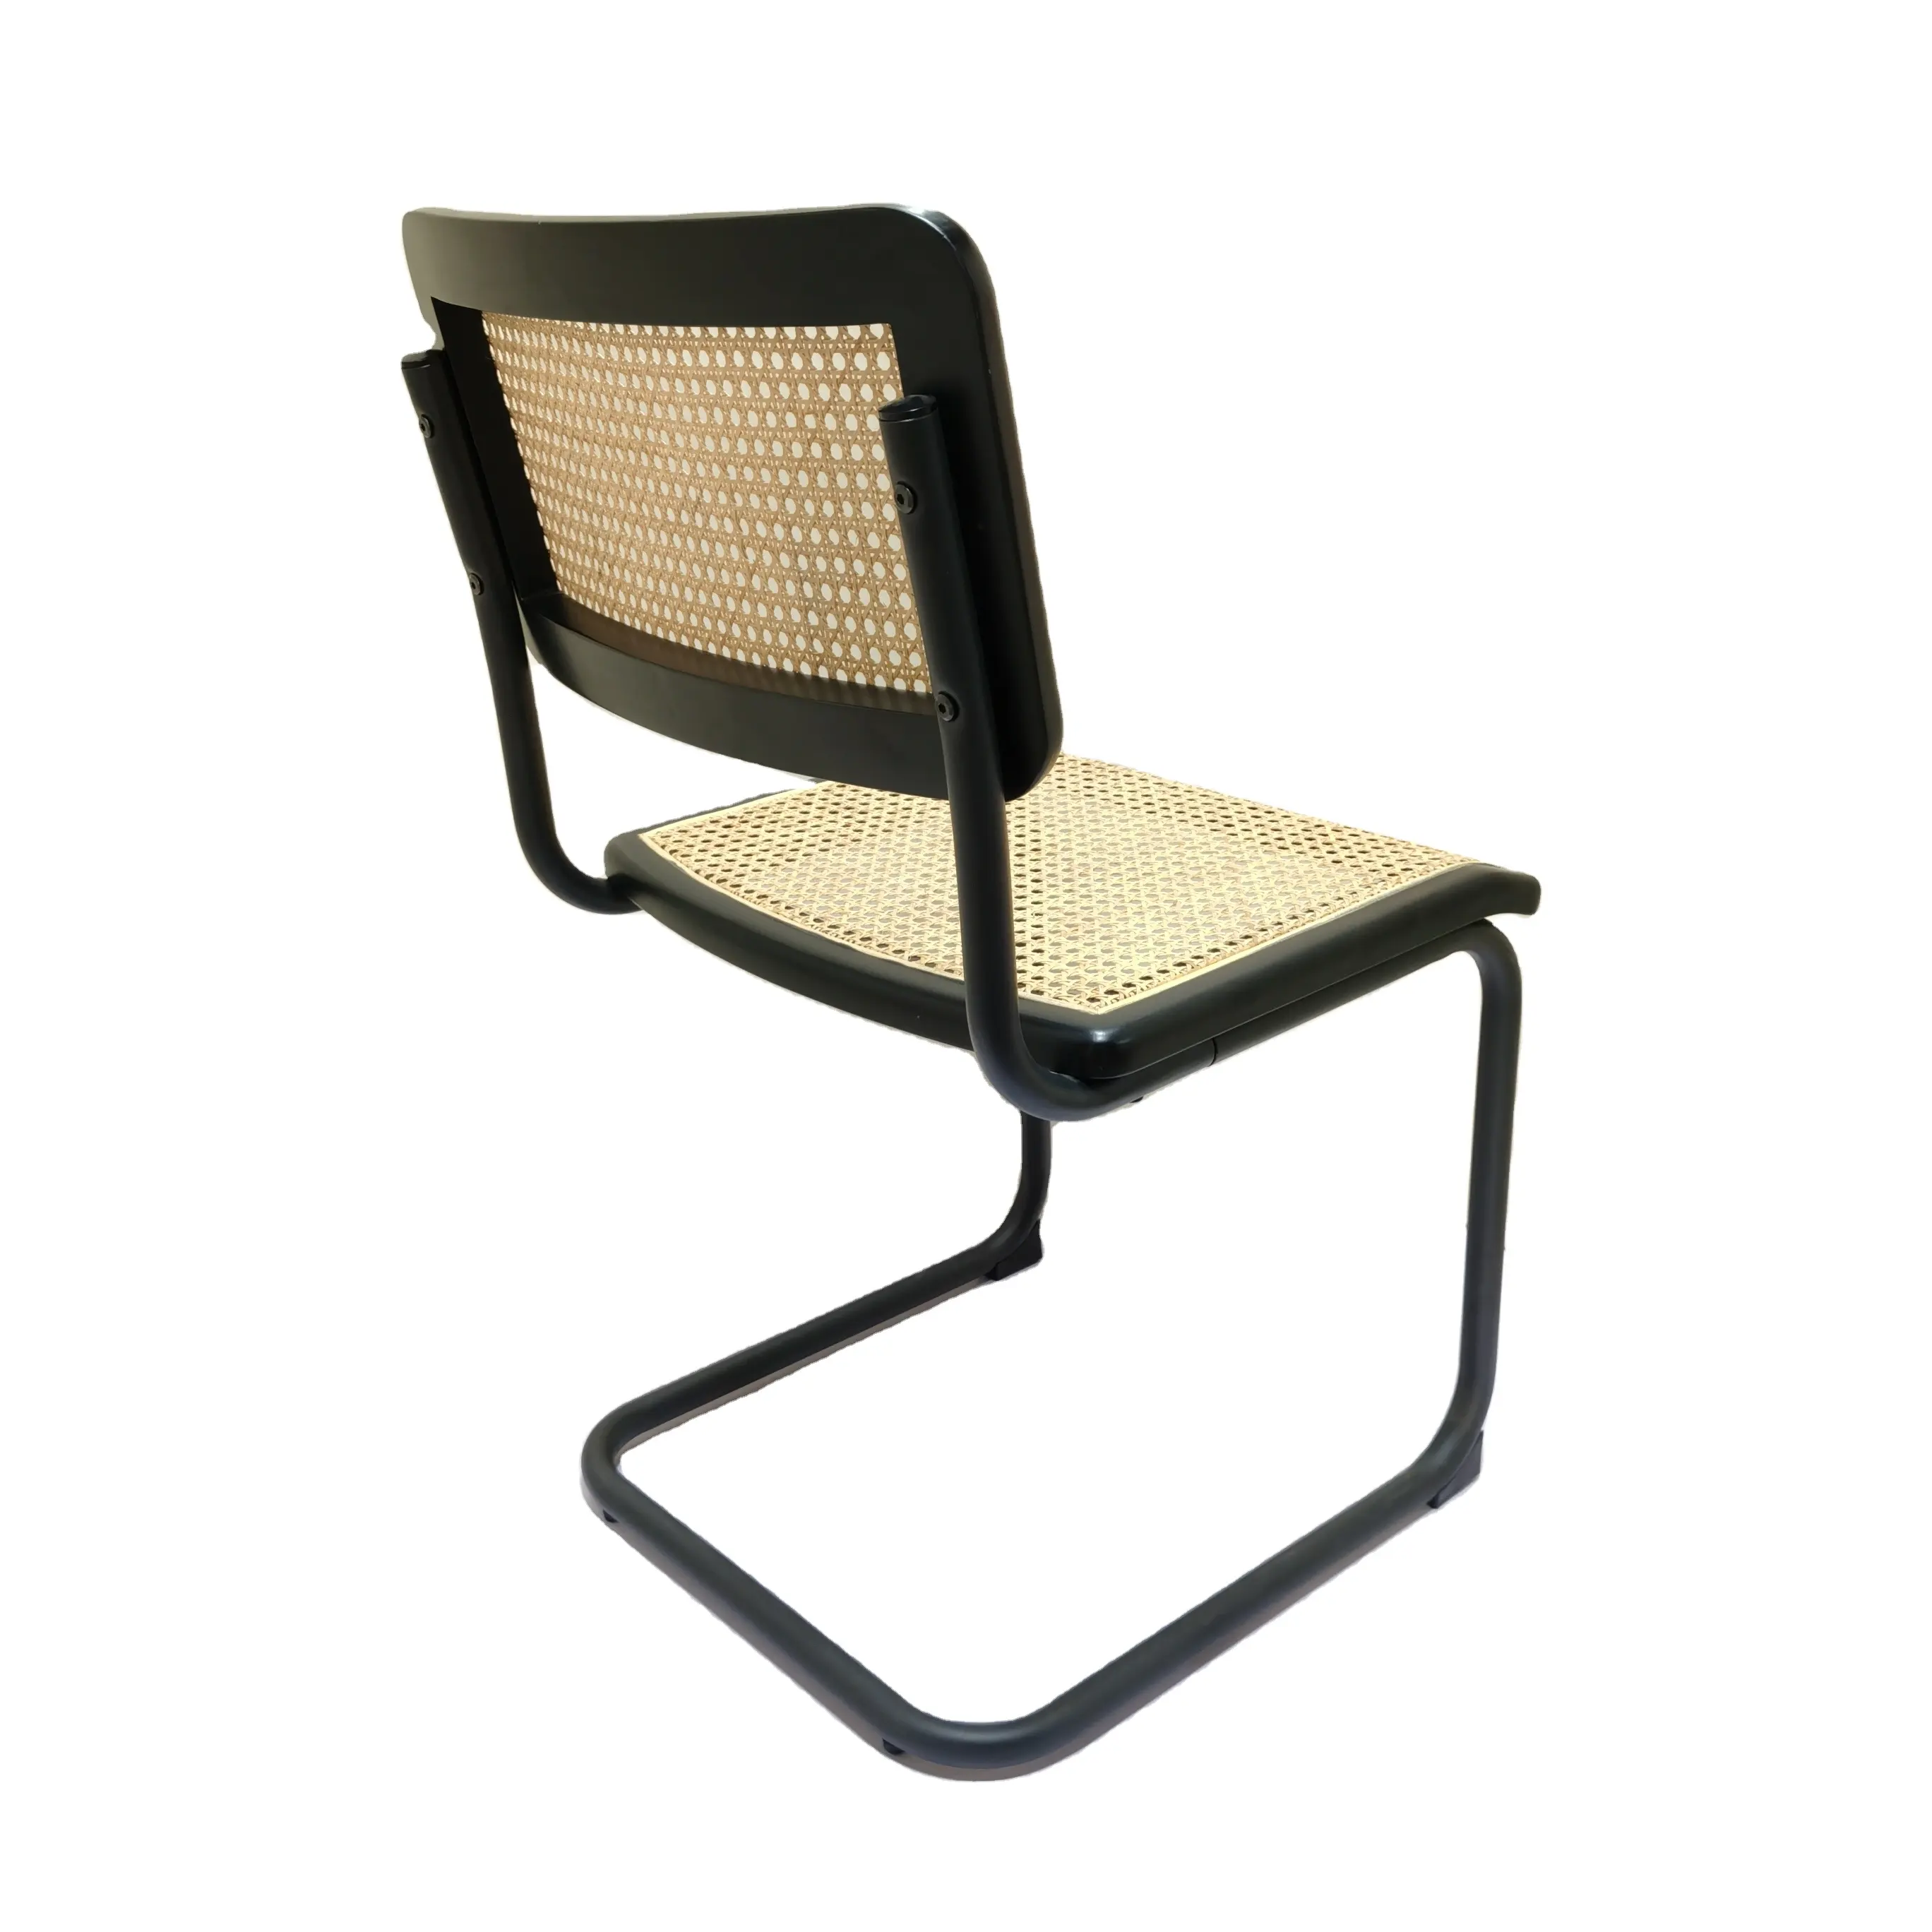 เก้าอี้หวายไม้เนื้อแข็งสำหรับใช้ในบ้าน,เก้าอี้แบบย้อนยุคมีพนักพิงเก้าอี้รับประทานอาหารแบบเรียบง่าย